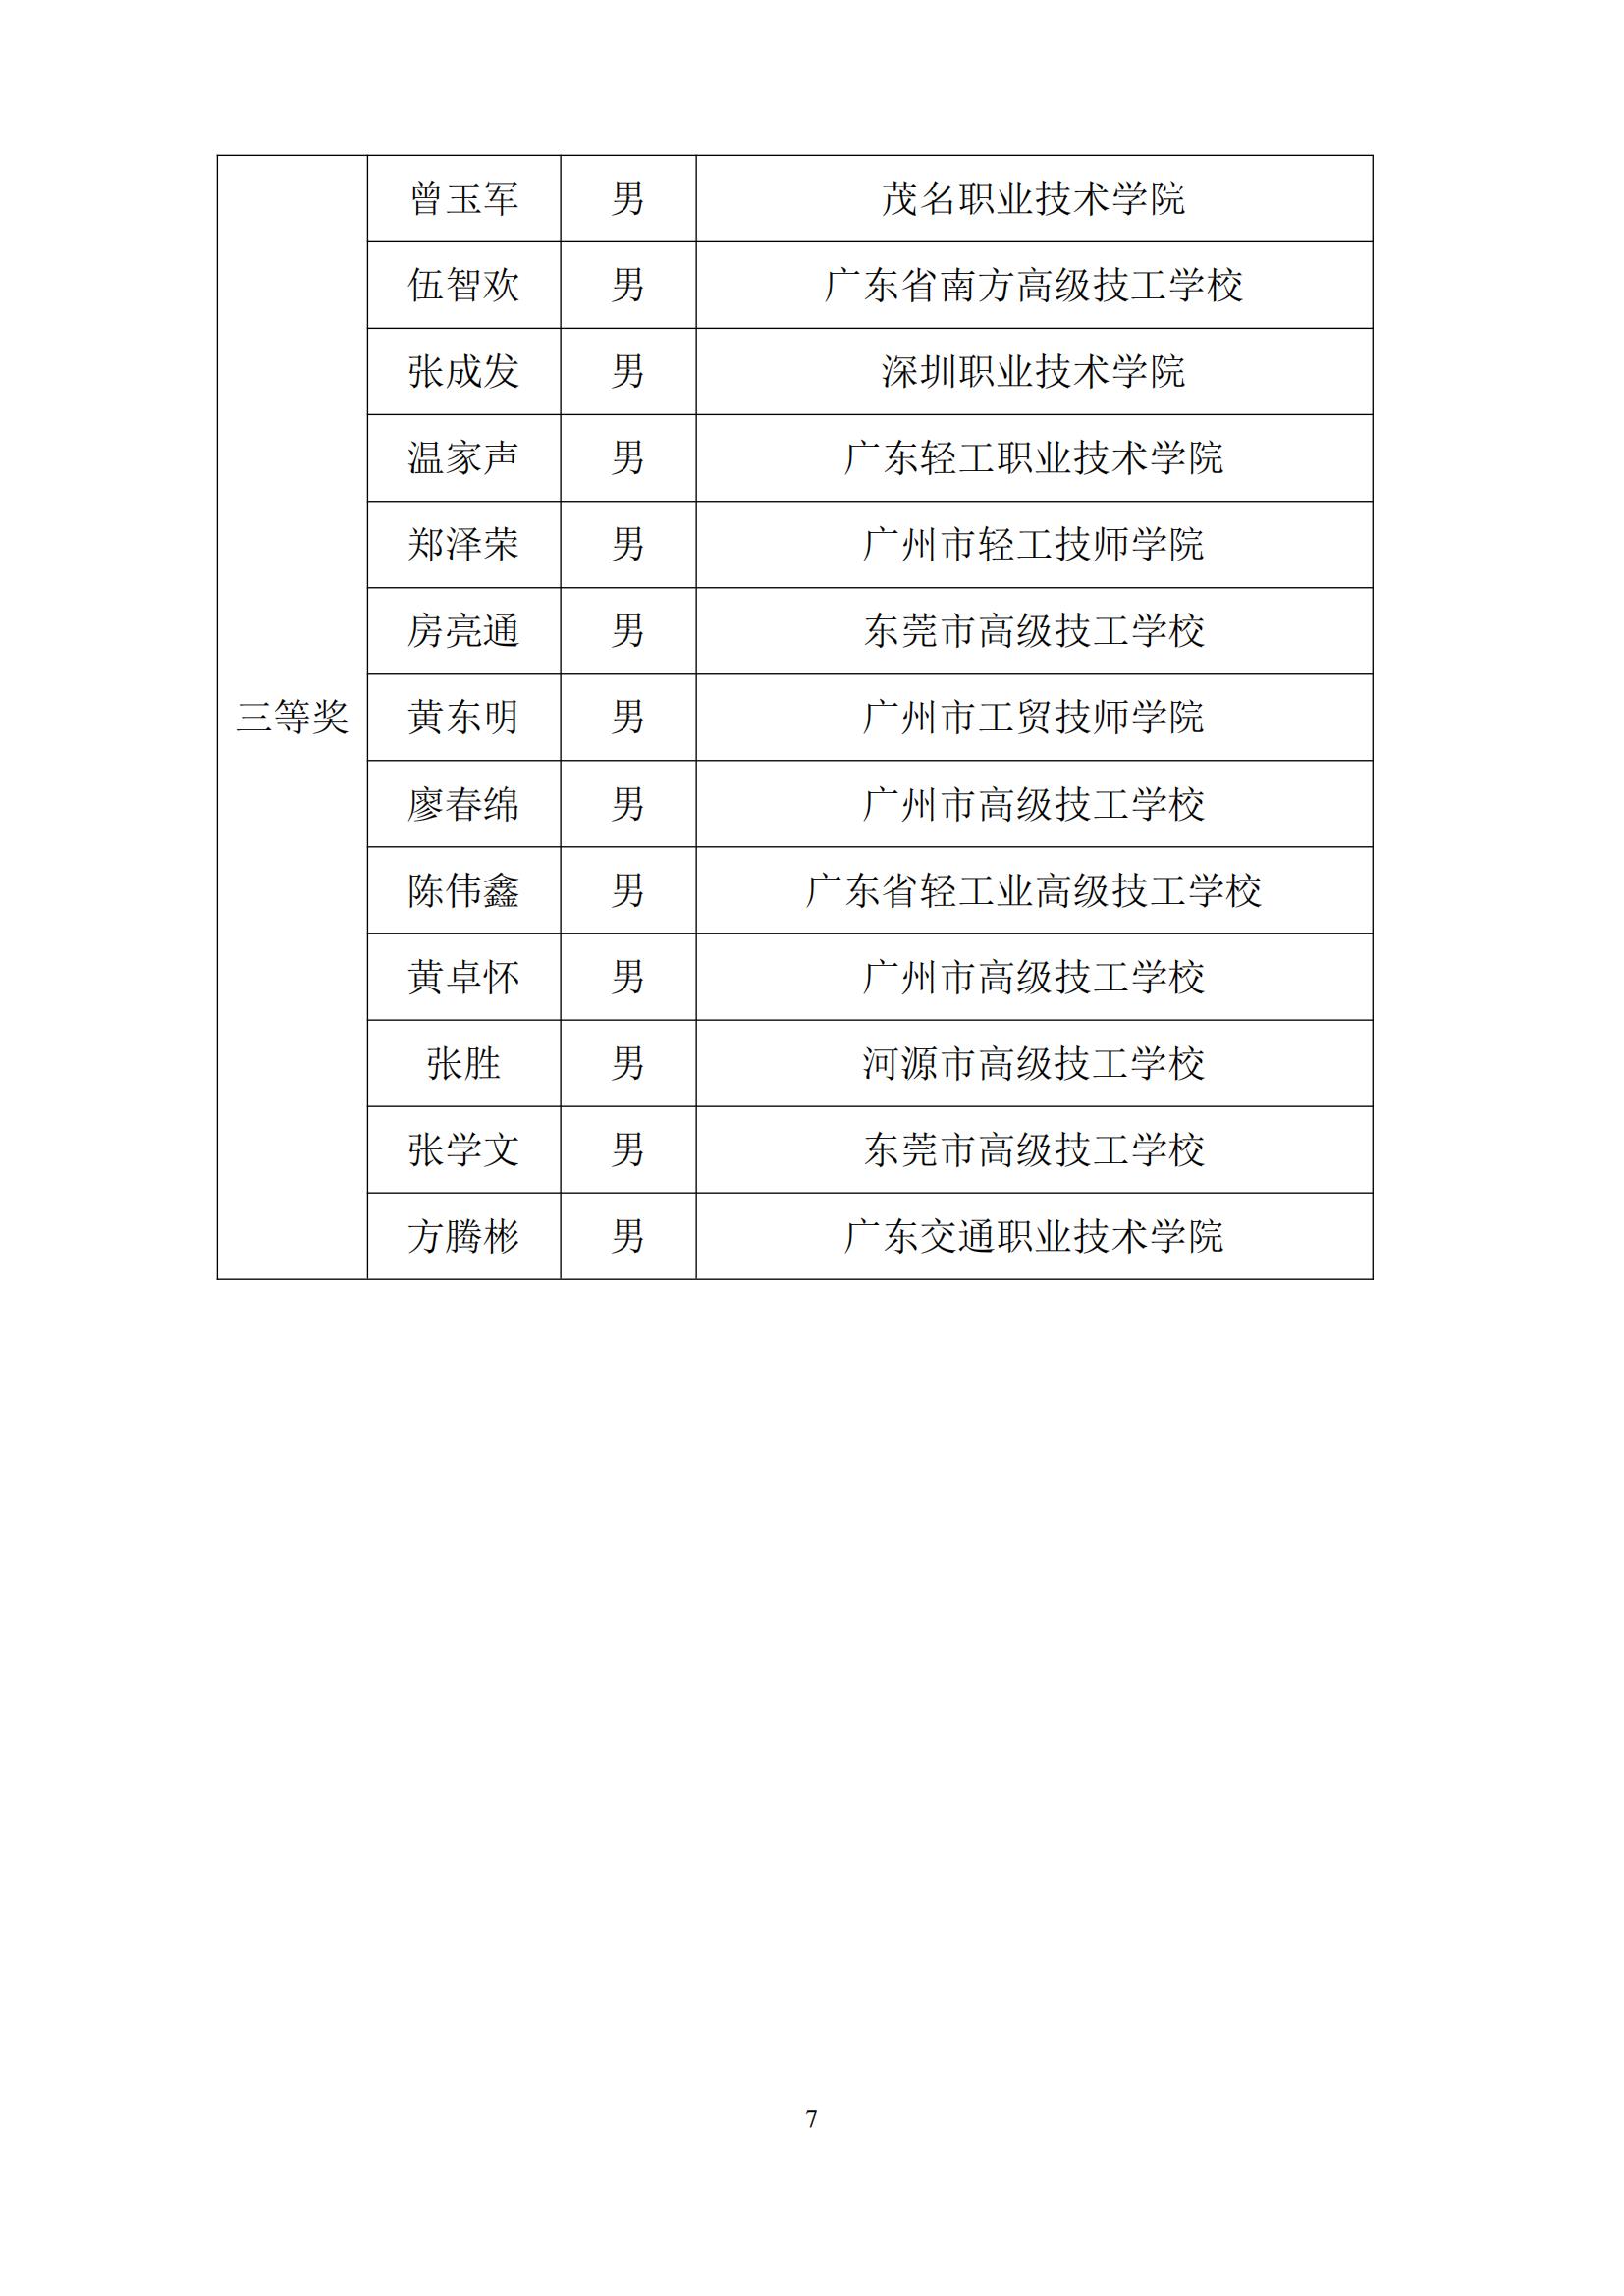 2011 年广东省可编程序系统控制设计师职业技能竞赛_06.jpg